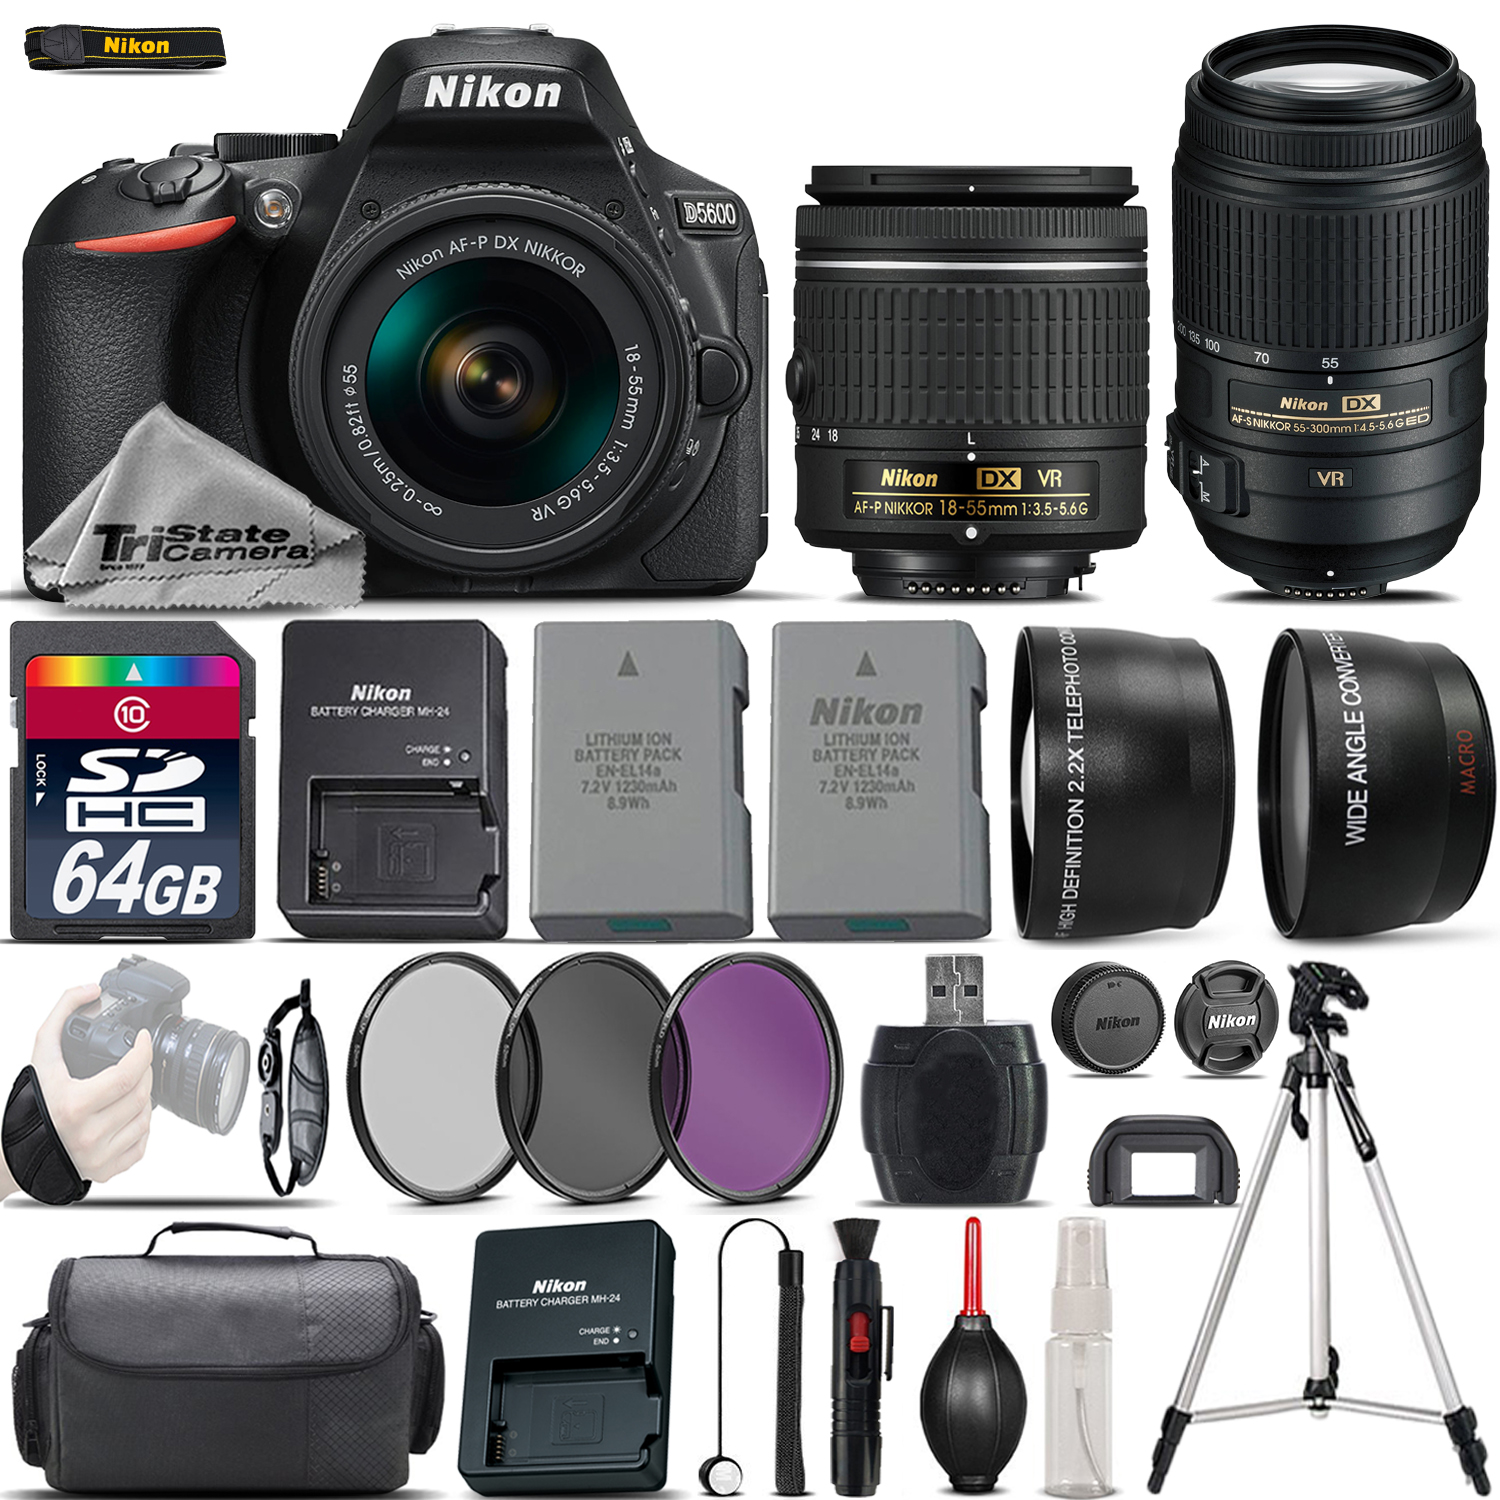 D5600 Digital SLR Camera + 18-55mm VR + 55-300mm VR + Extra Battery +64GB *FREE SHIPPING*